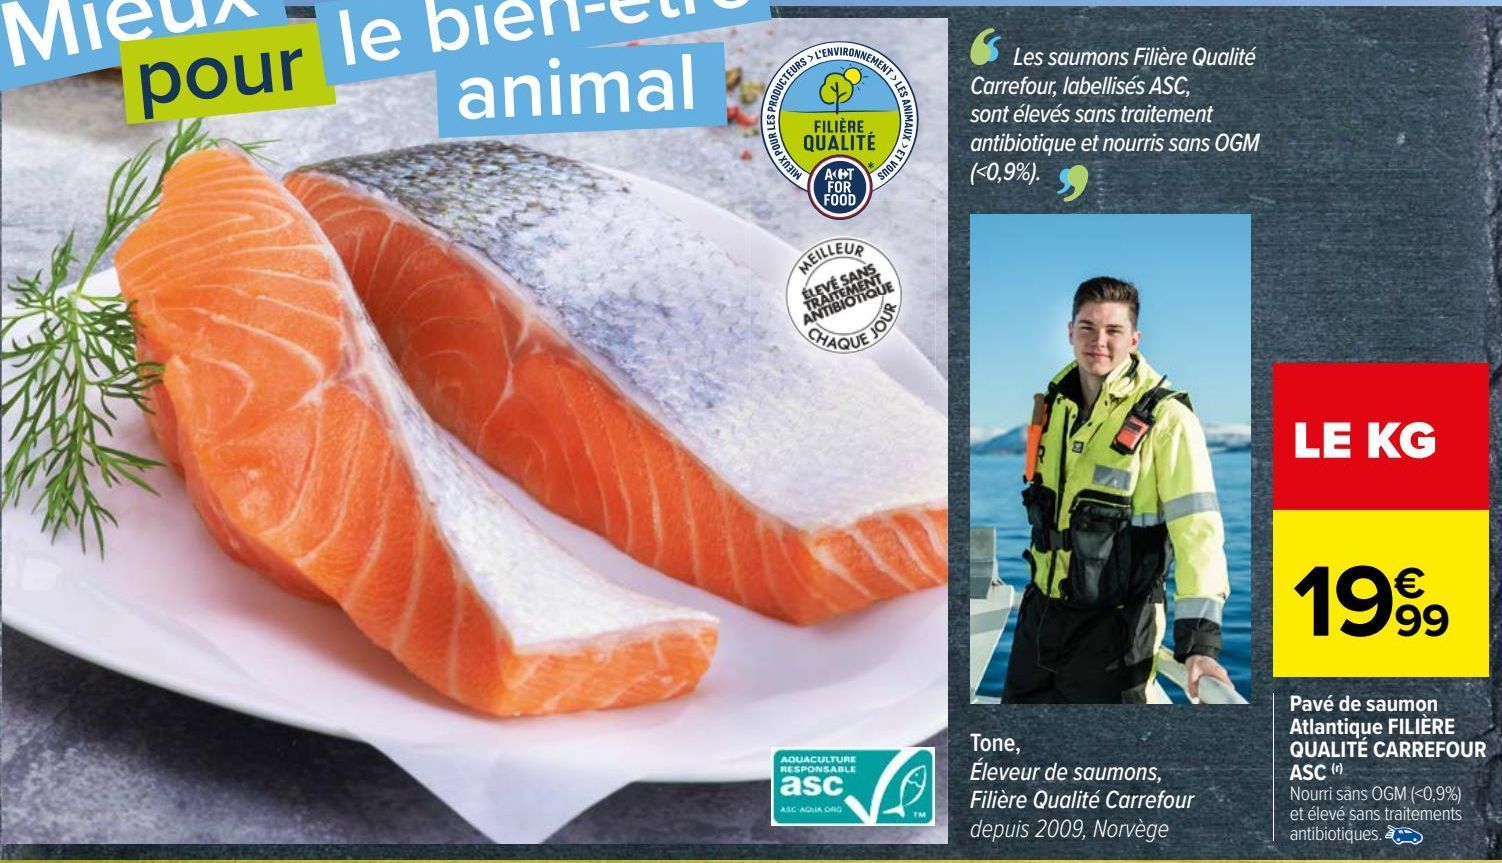 Pavé de saumon Atlantique FILIÈRE QUALITÉ CARREFOUR ASC